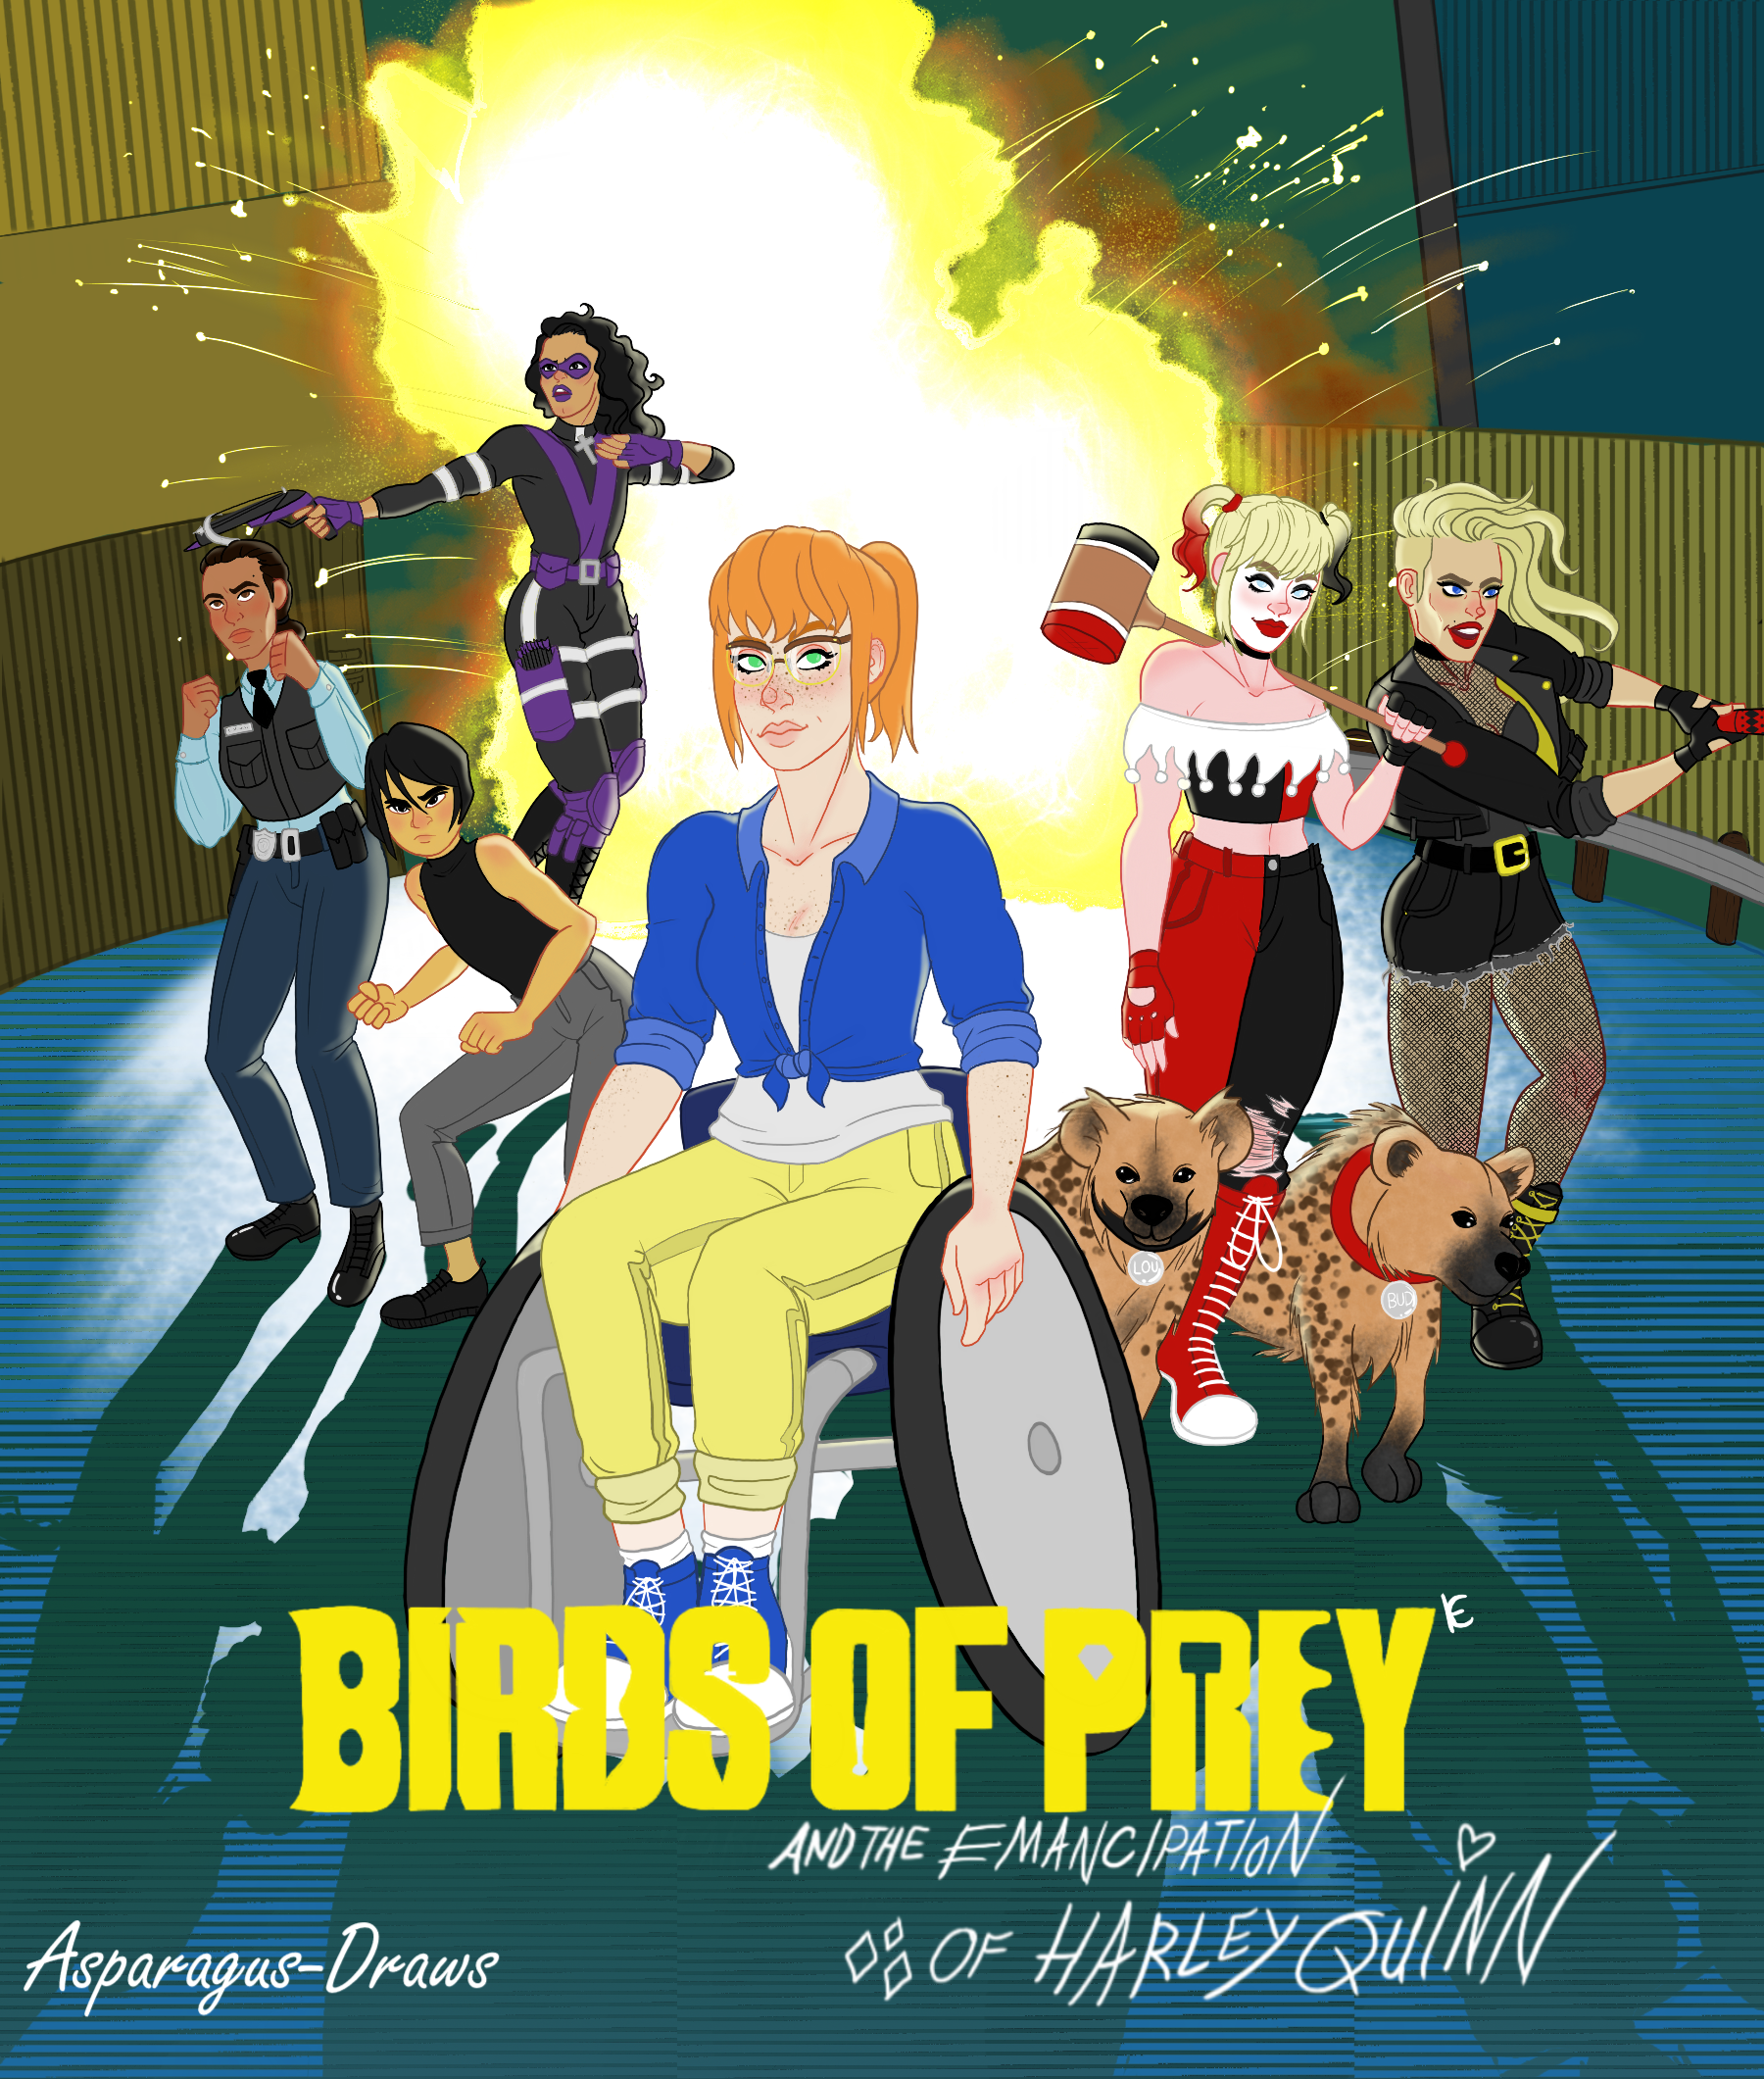 Birds of Prey fan cast. by piratebootsBN on DeviantArt